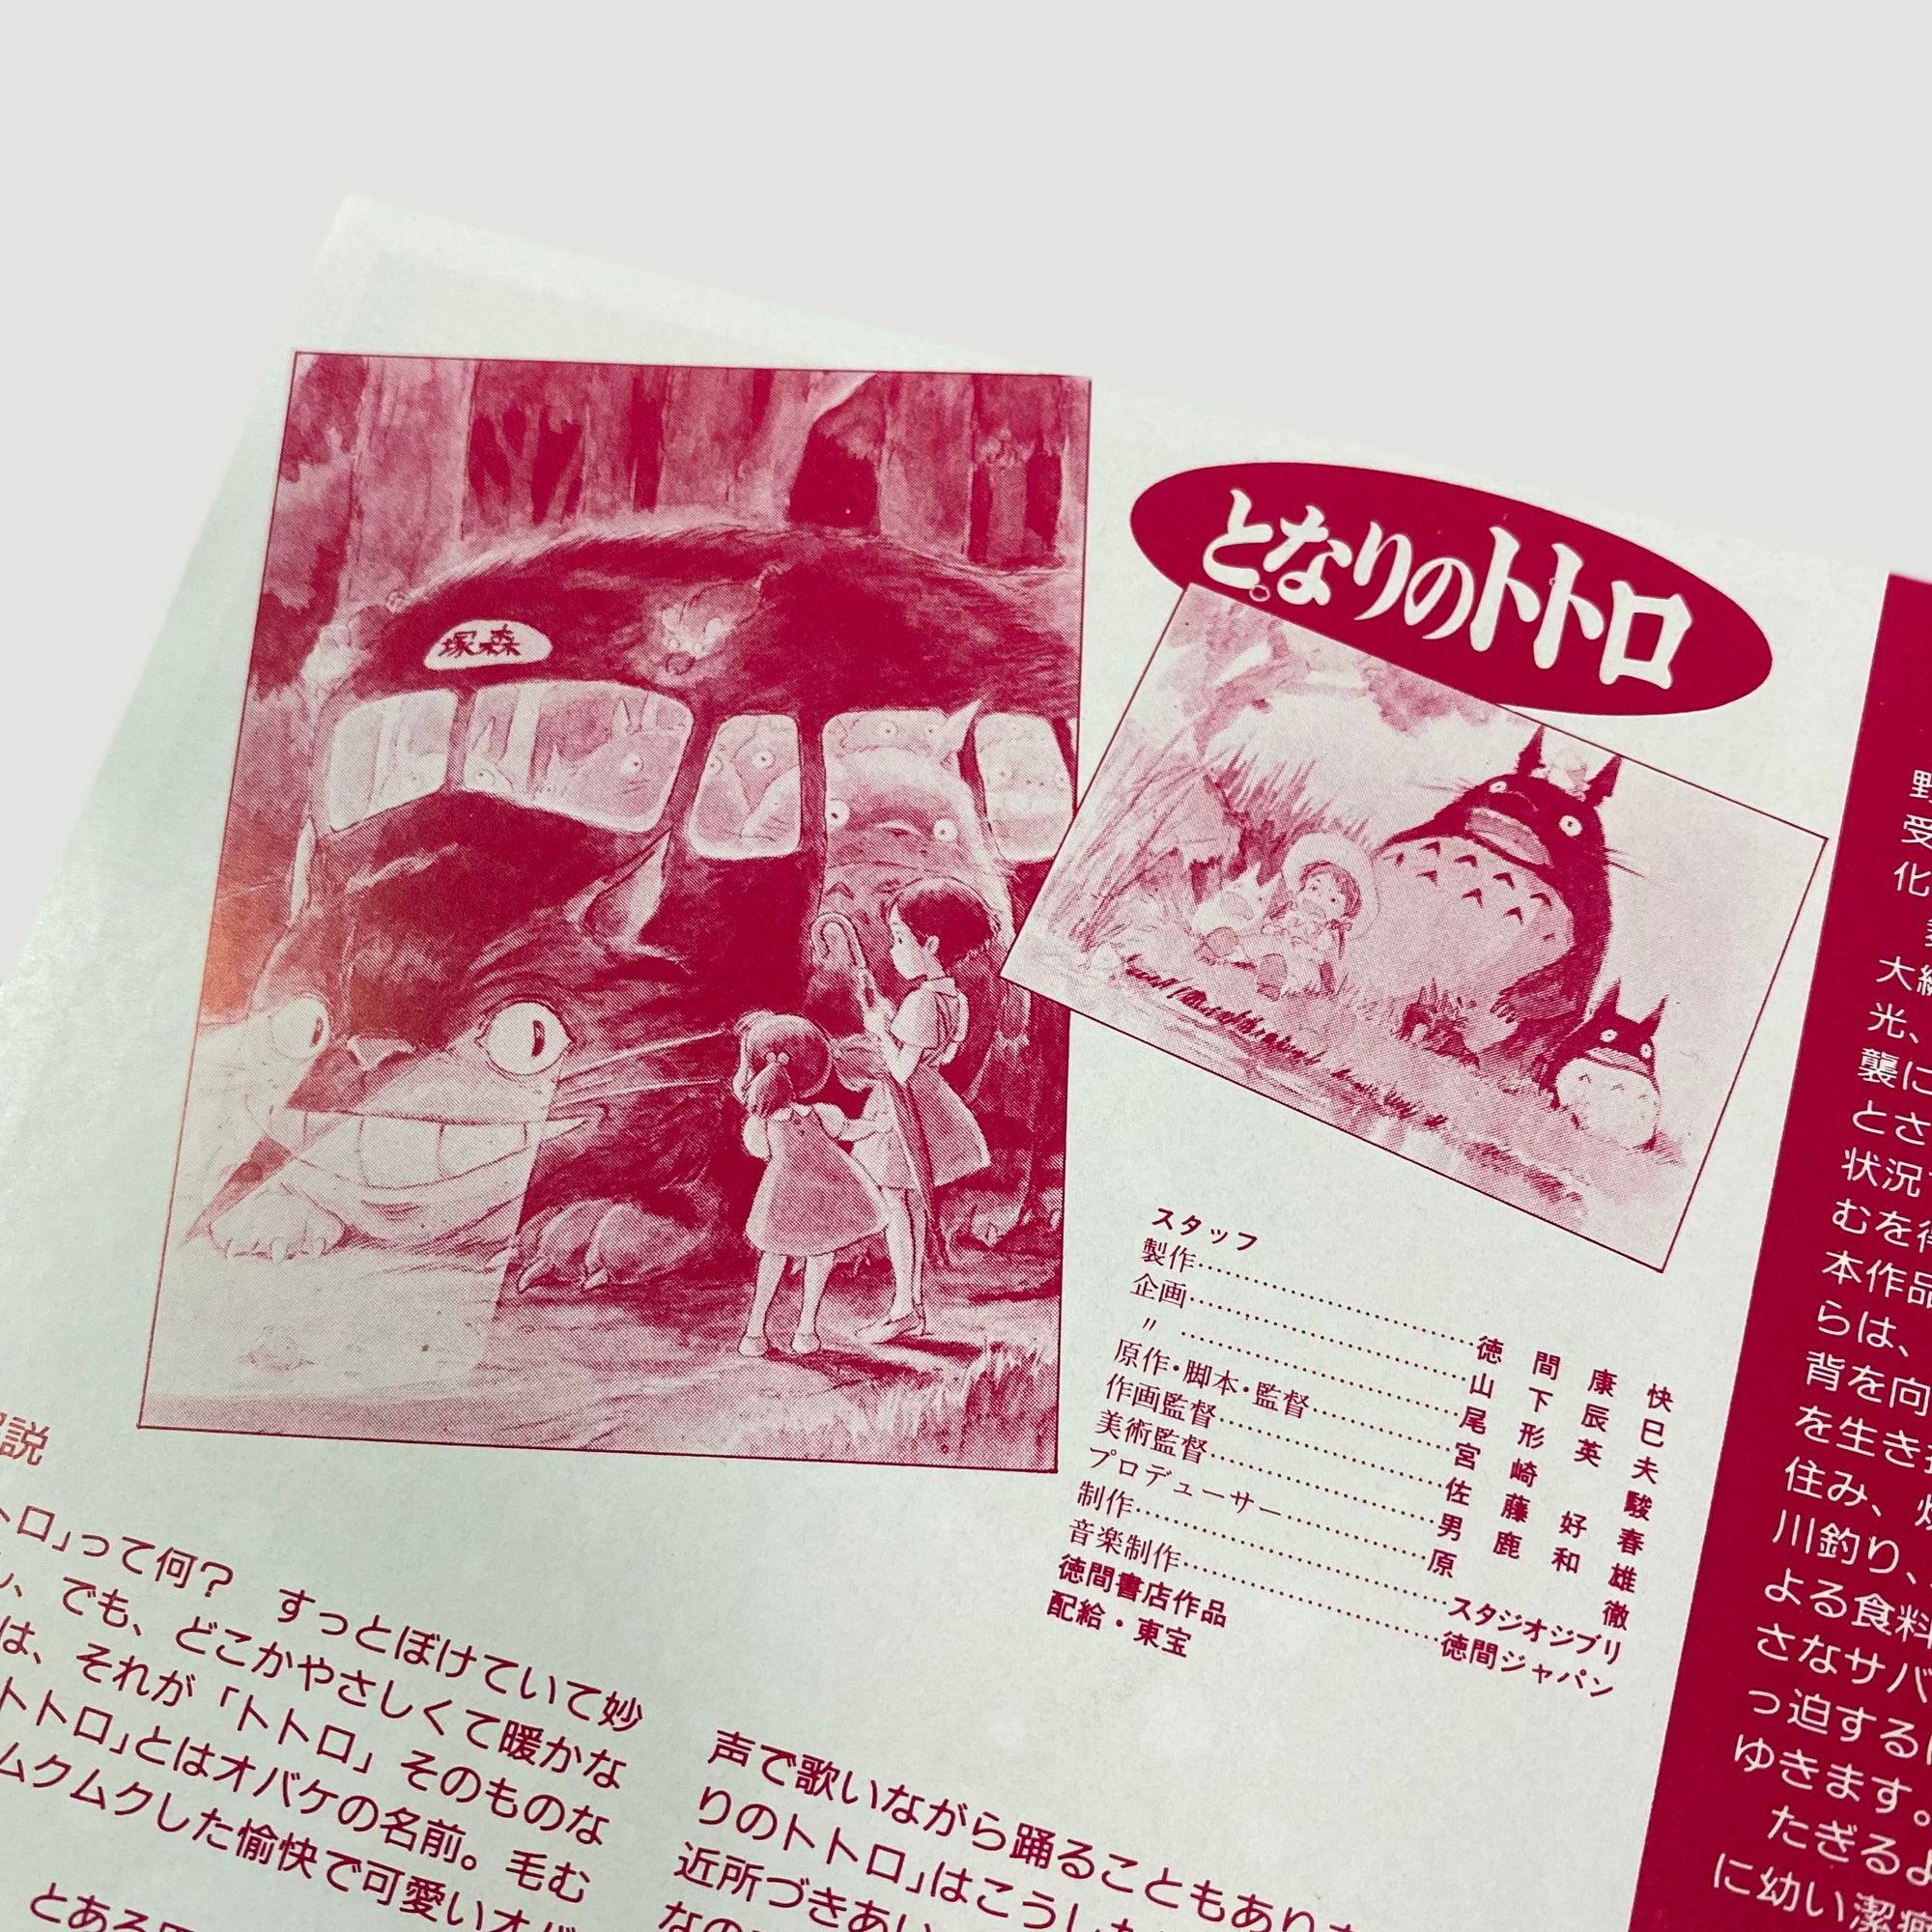 Grave of the Fireflies / My Neighbor Totoro Original 1988 Japanese B5  Chirashi Handbill